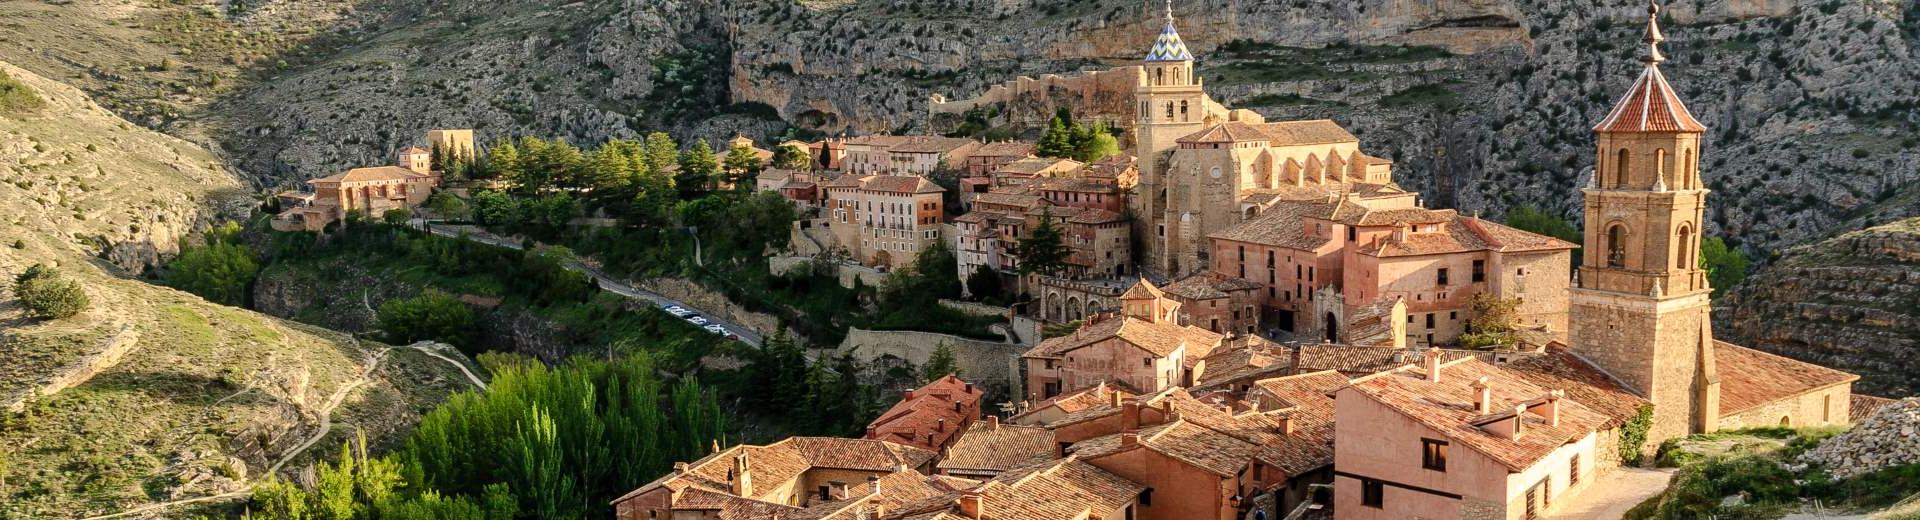 Ferienwohnungen & Ferienhäuser für Urlaub in Aragón - Casamundo